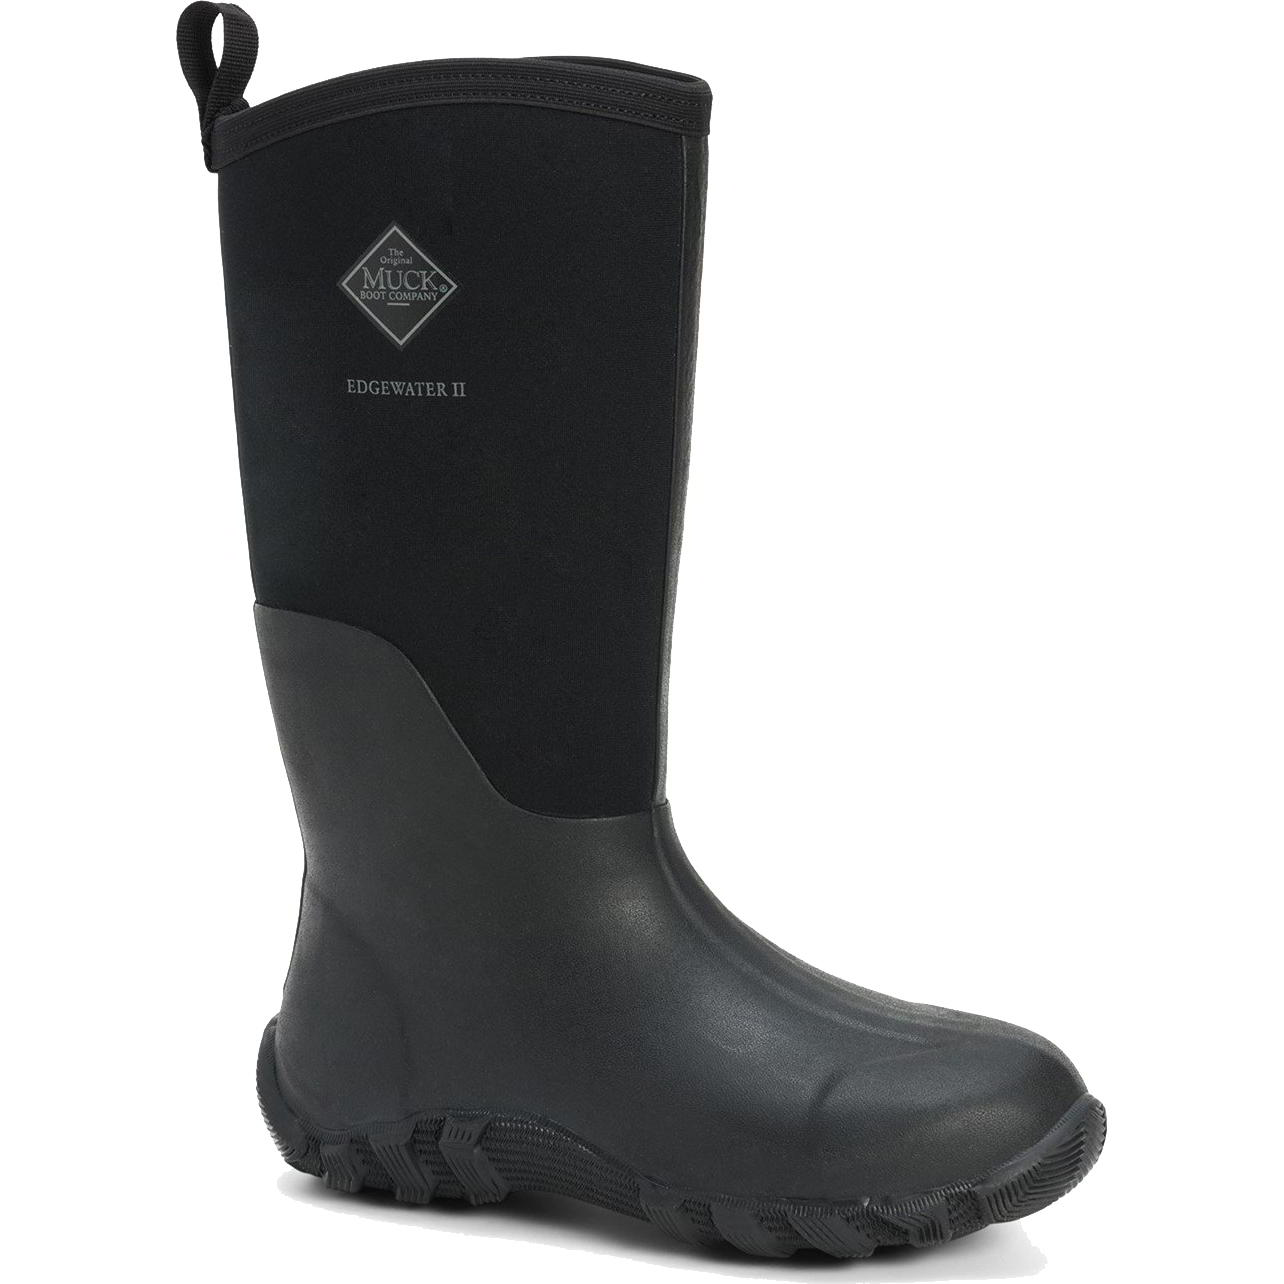 Muck Boots Mens Edgewater II Neoprene Wellies Rain - Black 2951